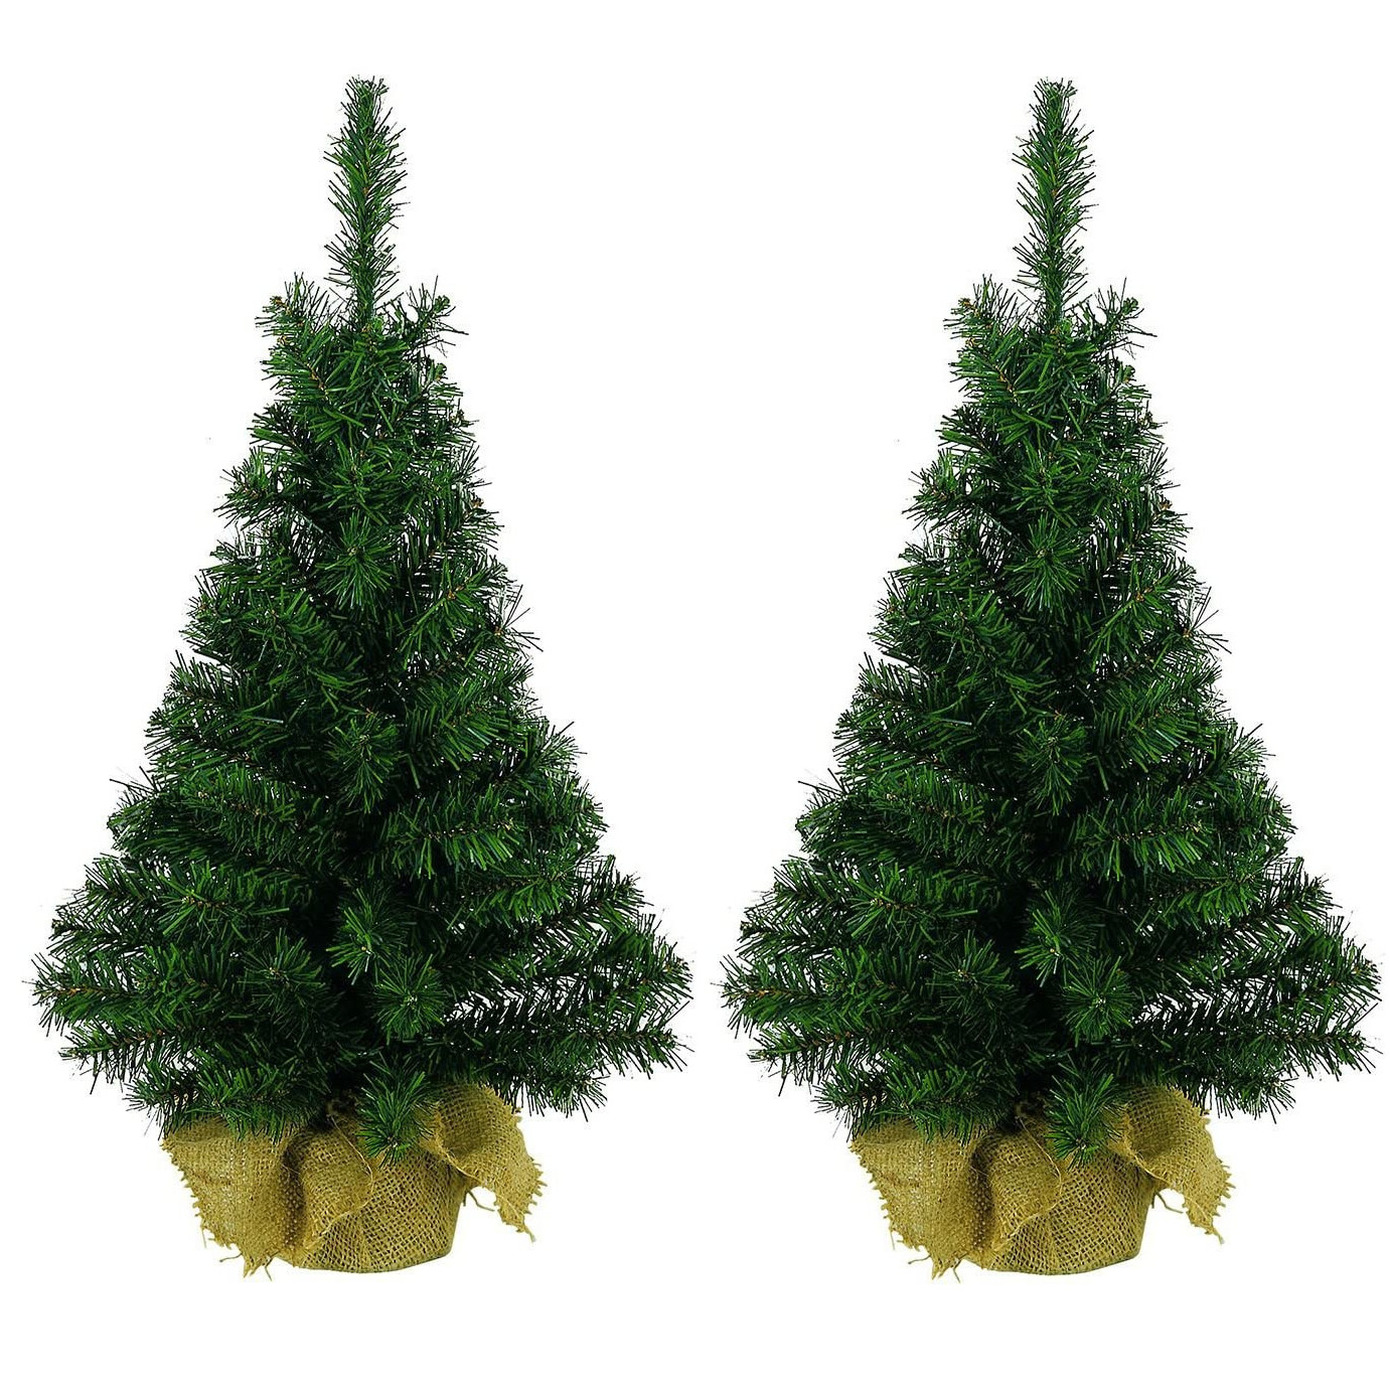 6x stuks kerst kunstbomen groen in jute zak 45 cm